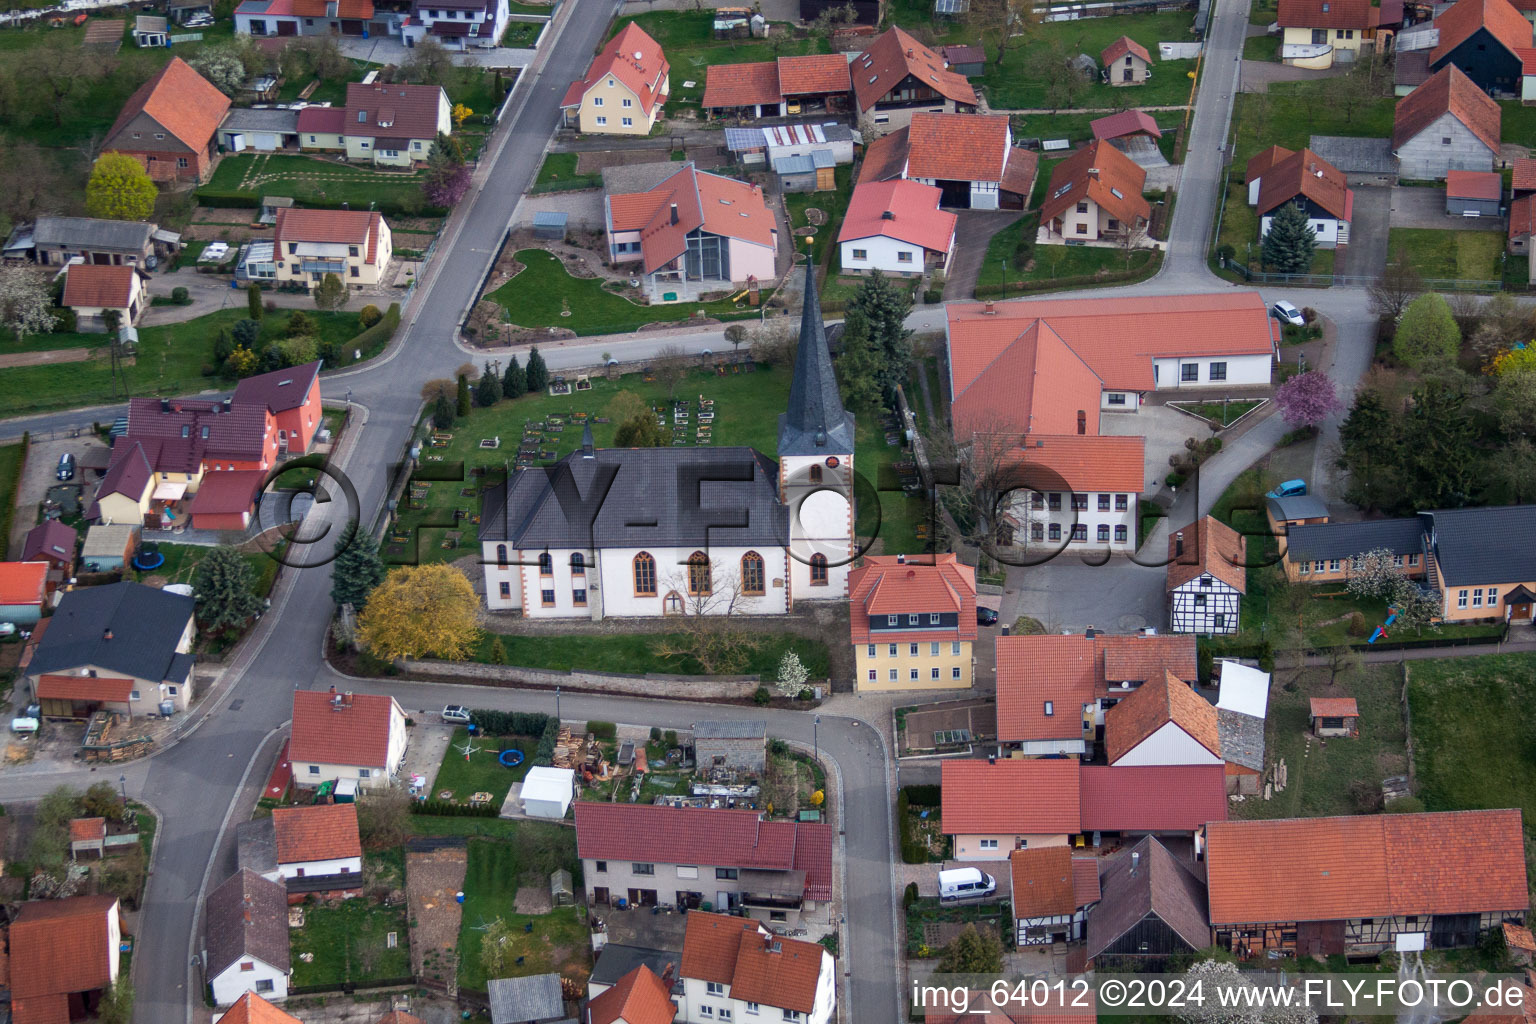 Vue aérienne de Quartier de Queienfeld à Grabfeld dans le département Thuringe, Allemagne